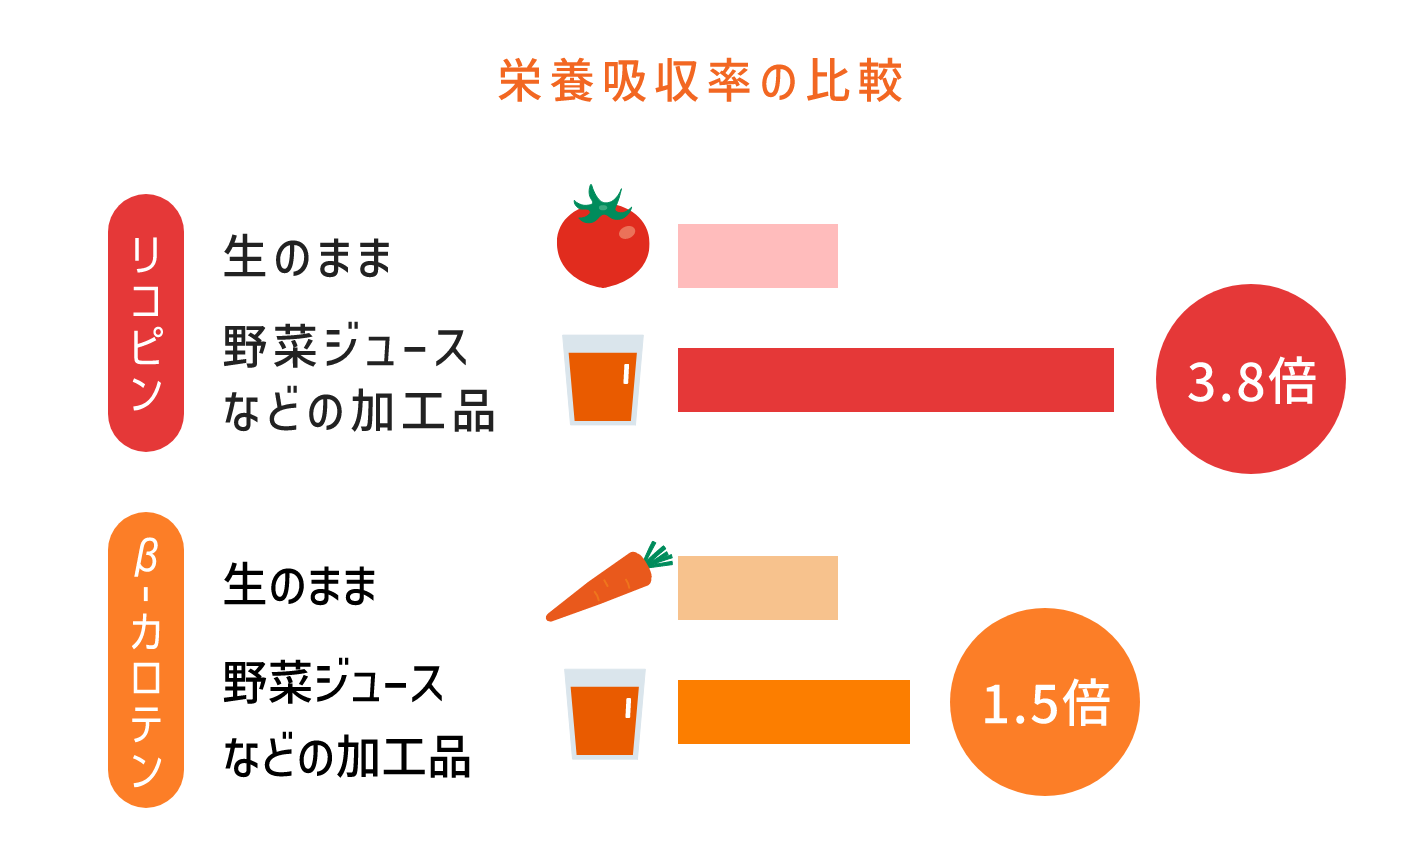 栄養吸収率の比較 リコピン 生のままに対し野菜ジュースなどの加工品：3.8倍 β-カロテン 生のままに対し野菜ジュースなどの加工品：1.5倍